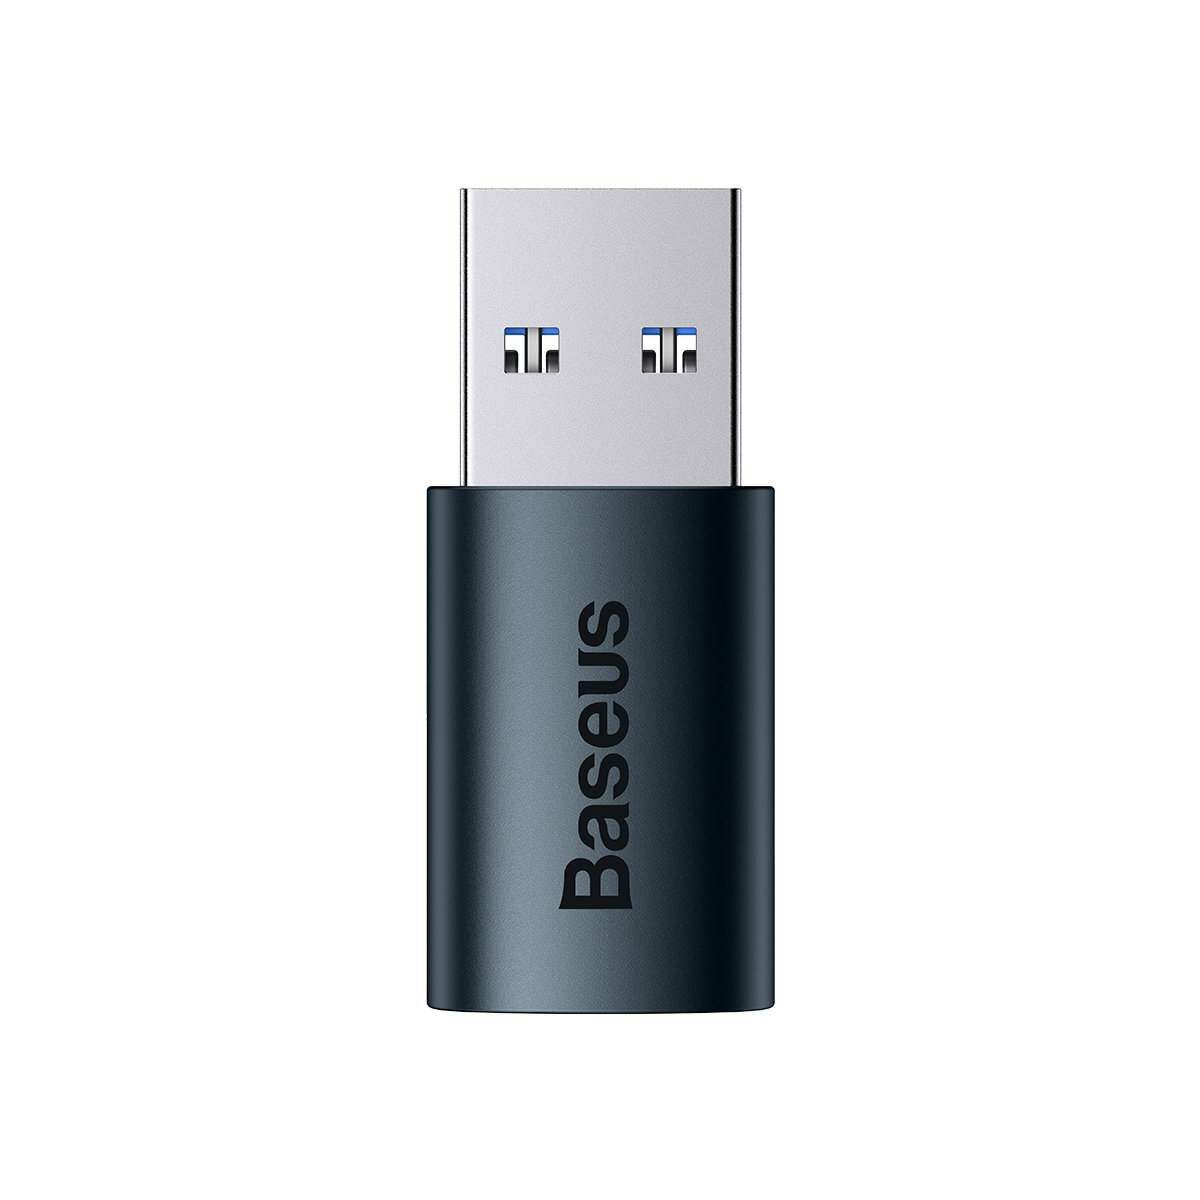 Kép 3/6 - Baseus Ingenuity Series Mini OTG adapter, USB-A 3.1-USB-C, kék (ZJJQ000103)